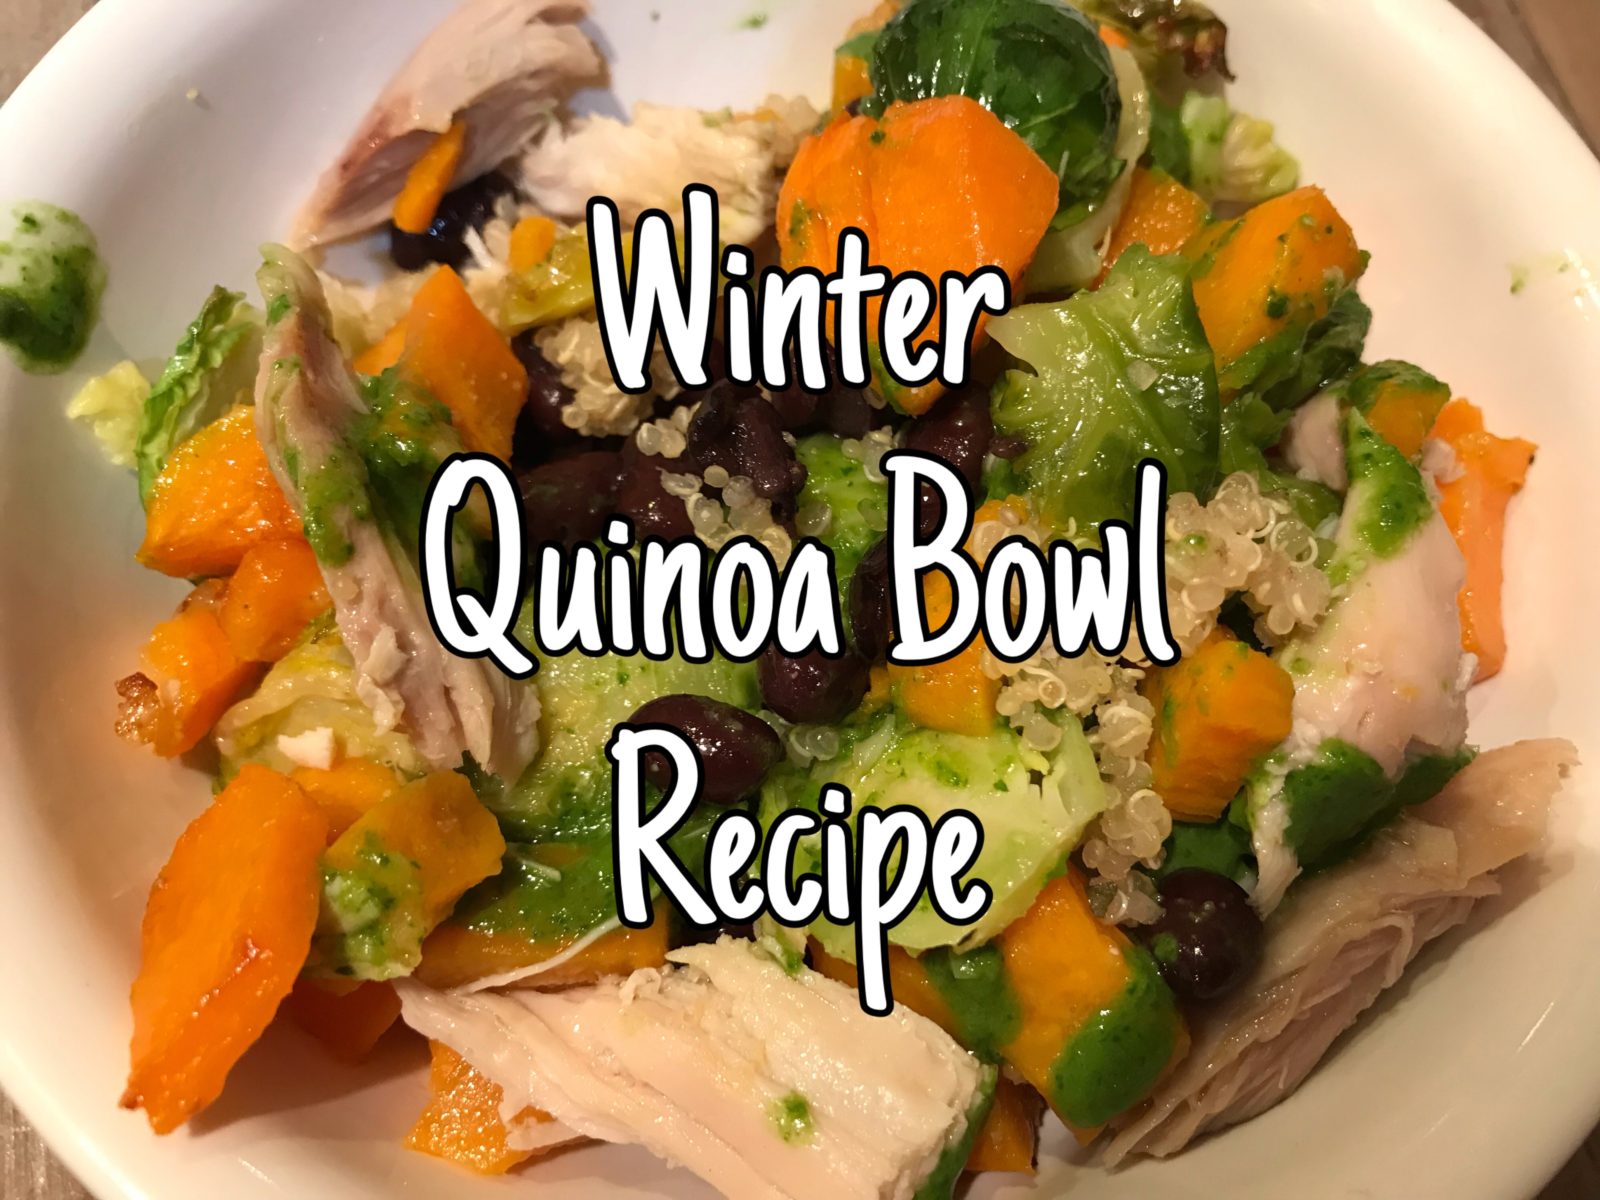 Winter Quinoa Bowl Recipe